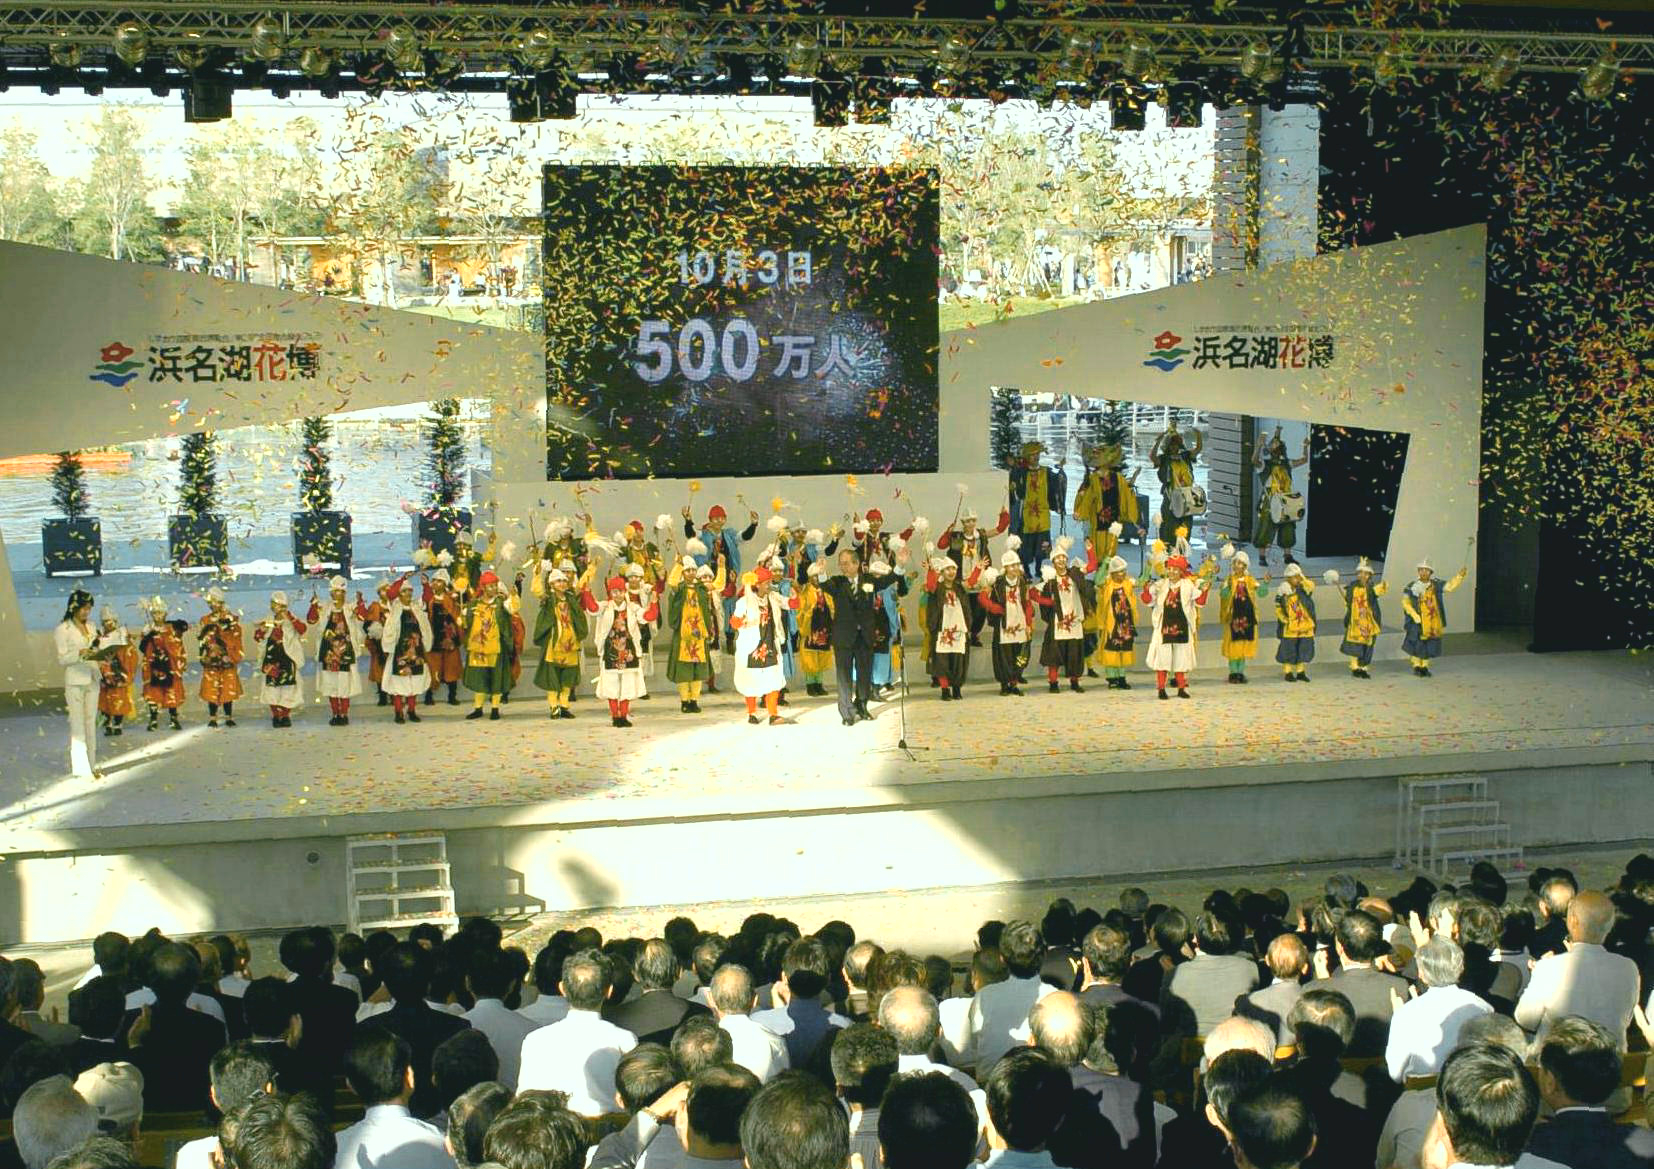 ５００万人と映し出された大型スクリーンの前で舞踊のパフォーマンスを見せる小中学生ら＝浜松市村櫛町の花博会場・水辺の劇場